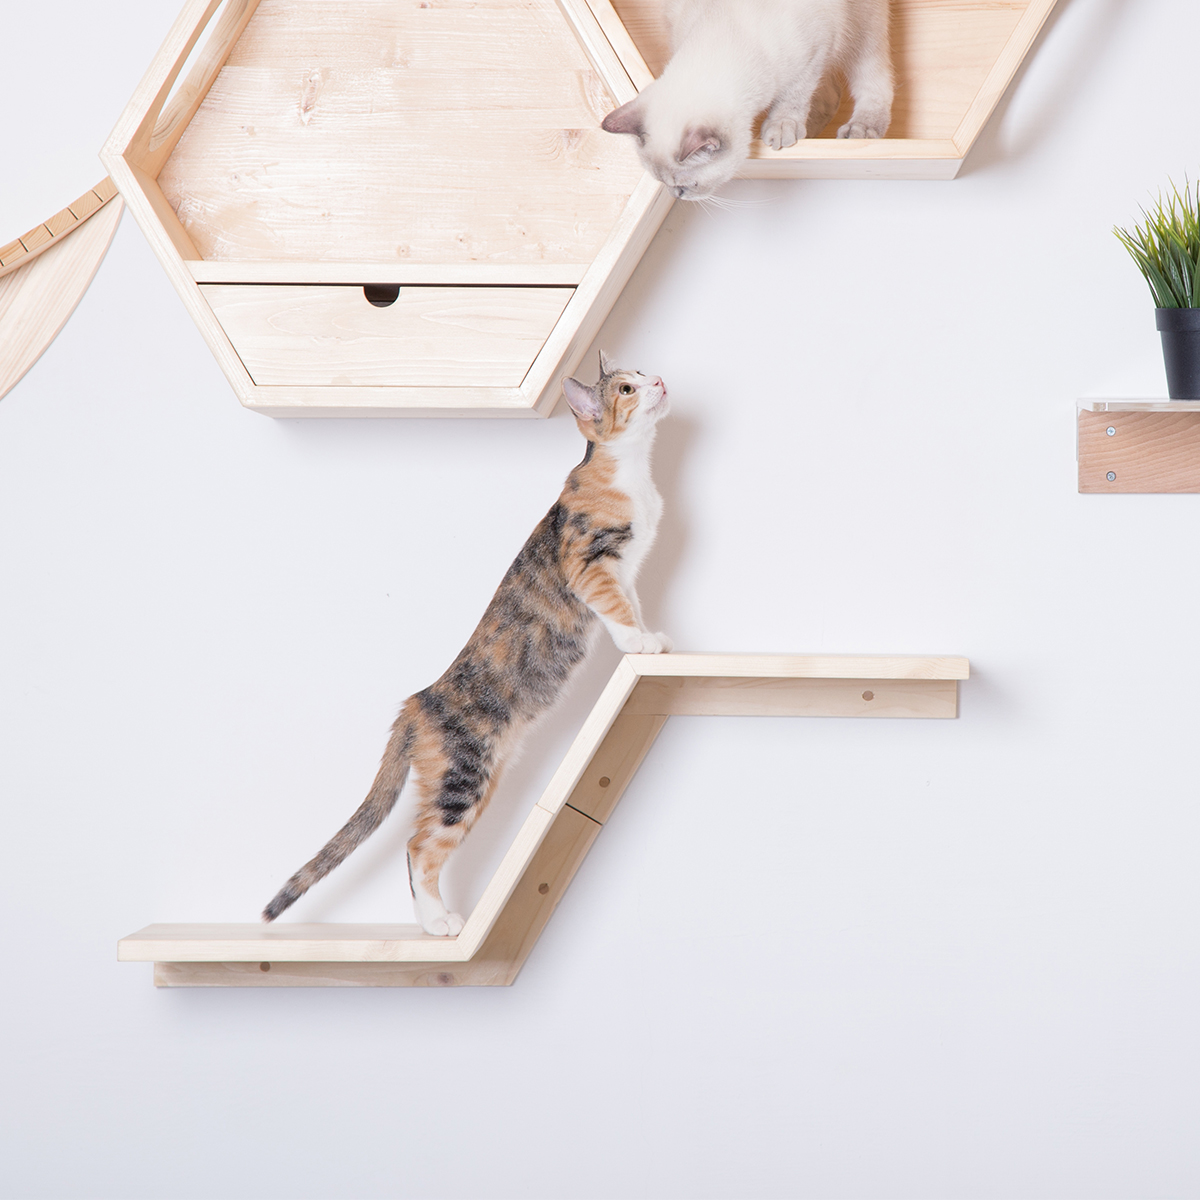 【楽天市場】my zoo 猫 キャットタワー 木製 壁 猫家具 キャットウォーク キャット ステップ ねこ ネコ かわいい おしゃれ